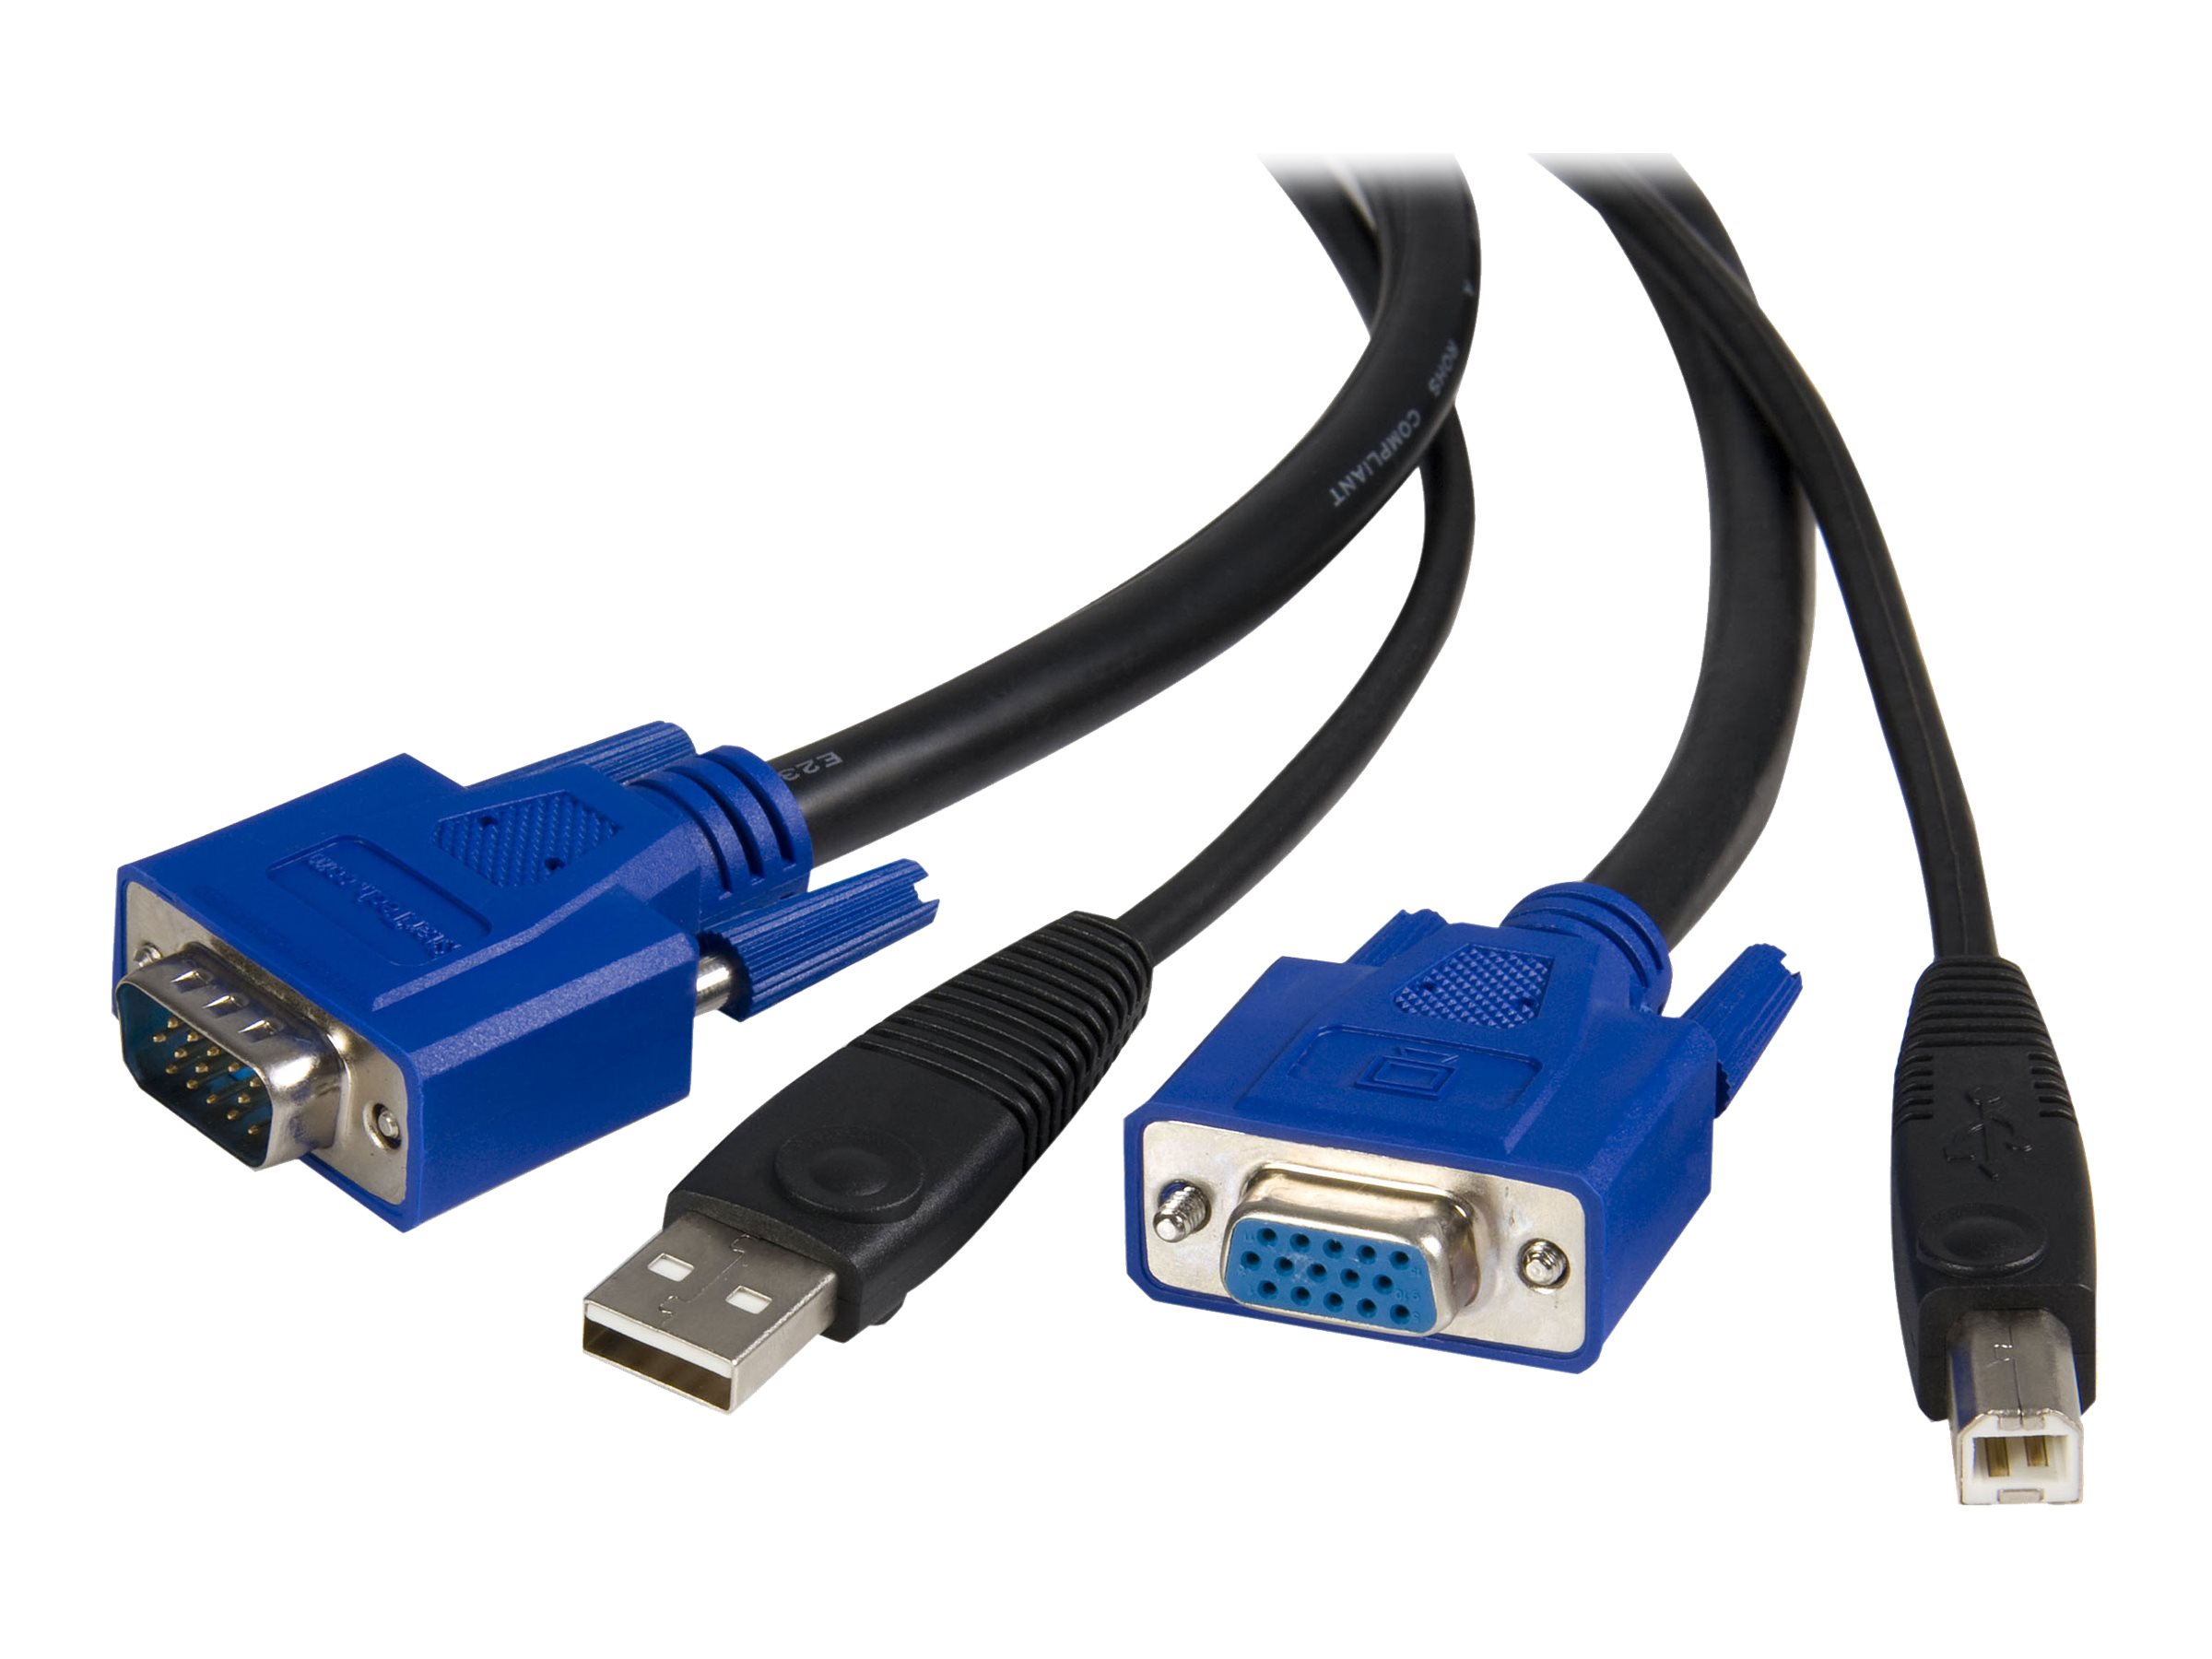 StarTech.com Câble pour switch KVM USB VGA de 3 m - Cordon pour commutateur KVM universel 2-en-1 de 3 mètres - HD-15 vers USB (SVUSB2N1_1) - Câble vidéo / USB - HD-15 (VGA), USB type B (M) pour USB, HD-15 (VGA) - 3 m - pour P/N: RKCOND17HD, SV231USBGB, SV231USBLC, SV431USB, SV431USBAE, SV431USBAEGB, SV431USBDDM - SVUSB2N1_10 - Câbles KVM